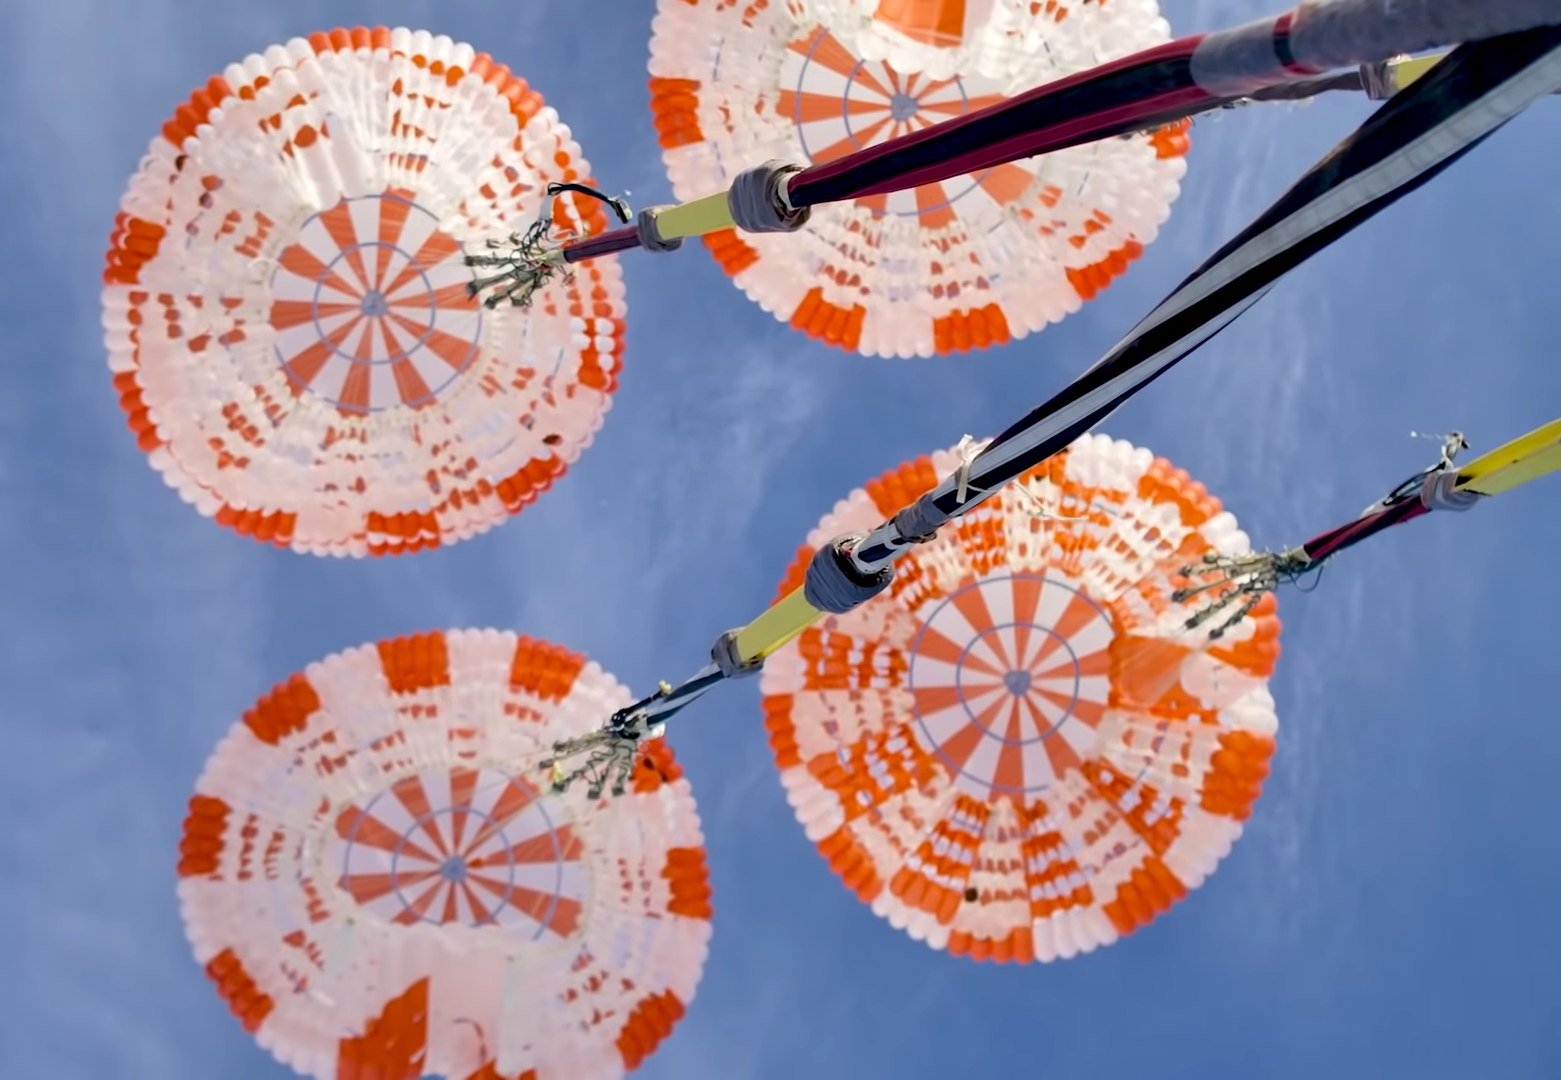 Test des parachutes de la capsule habitée Crew Dragon de SpaceX. © SpaceX